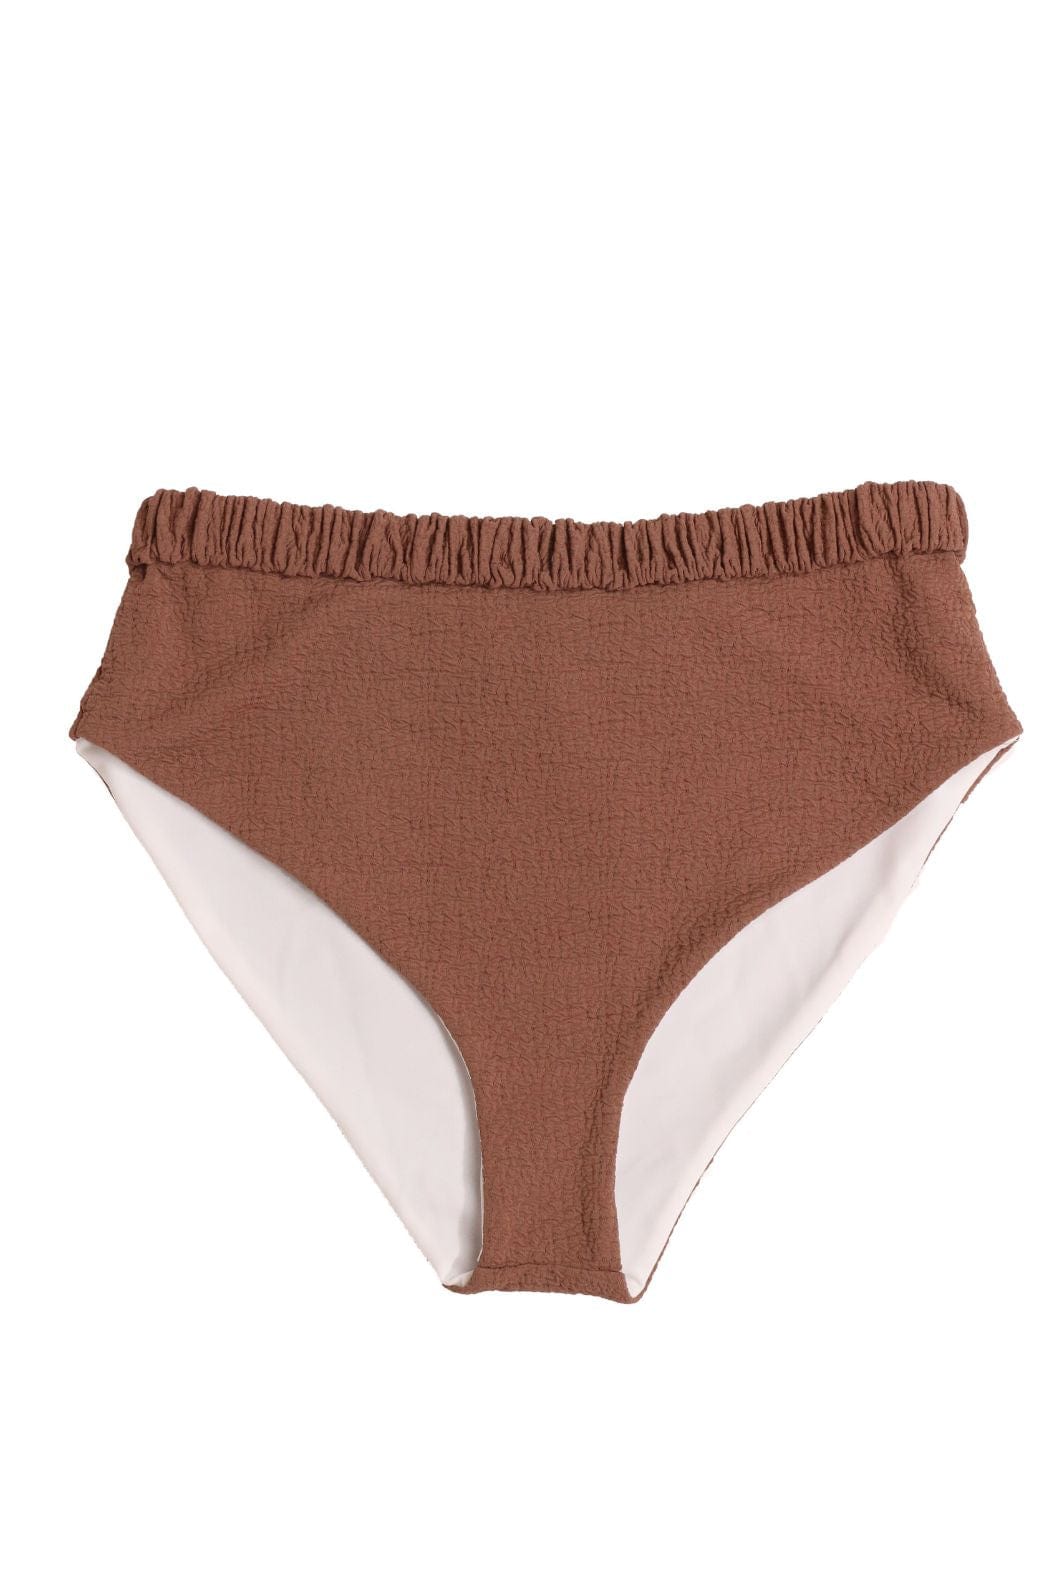 Undress Code Bikini Bottom Good Luck Charm Bikini Bottom - Brown